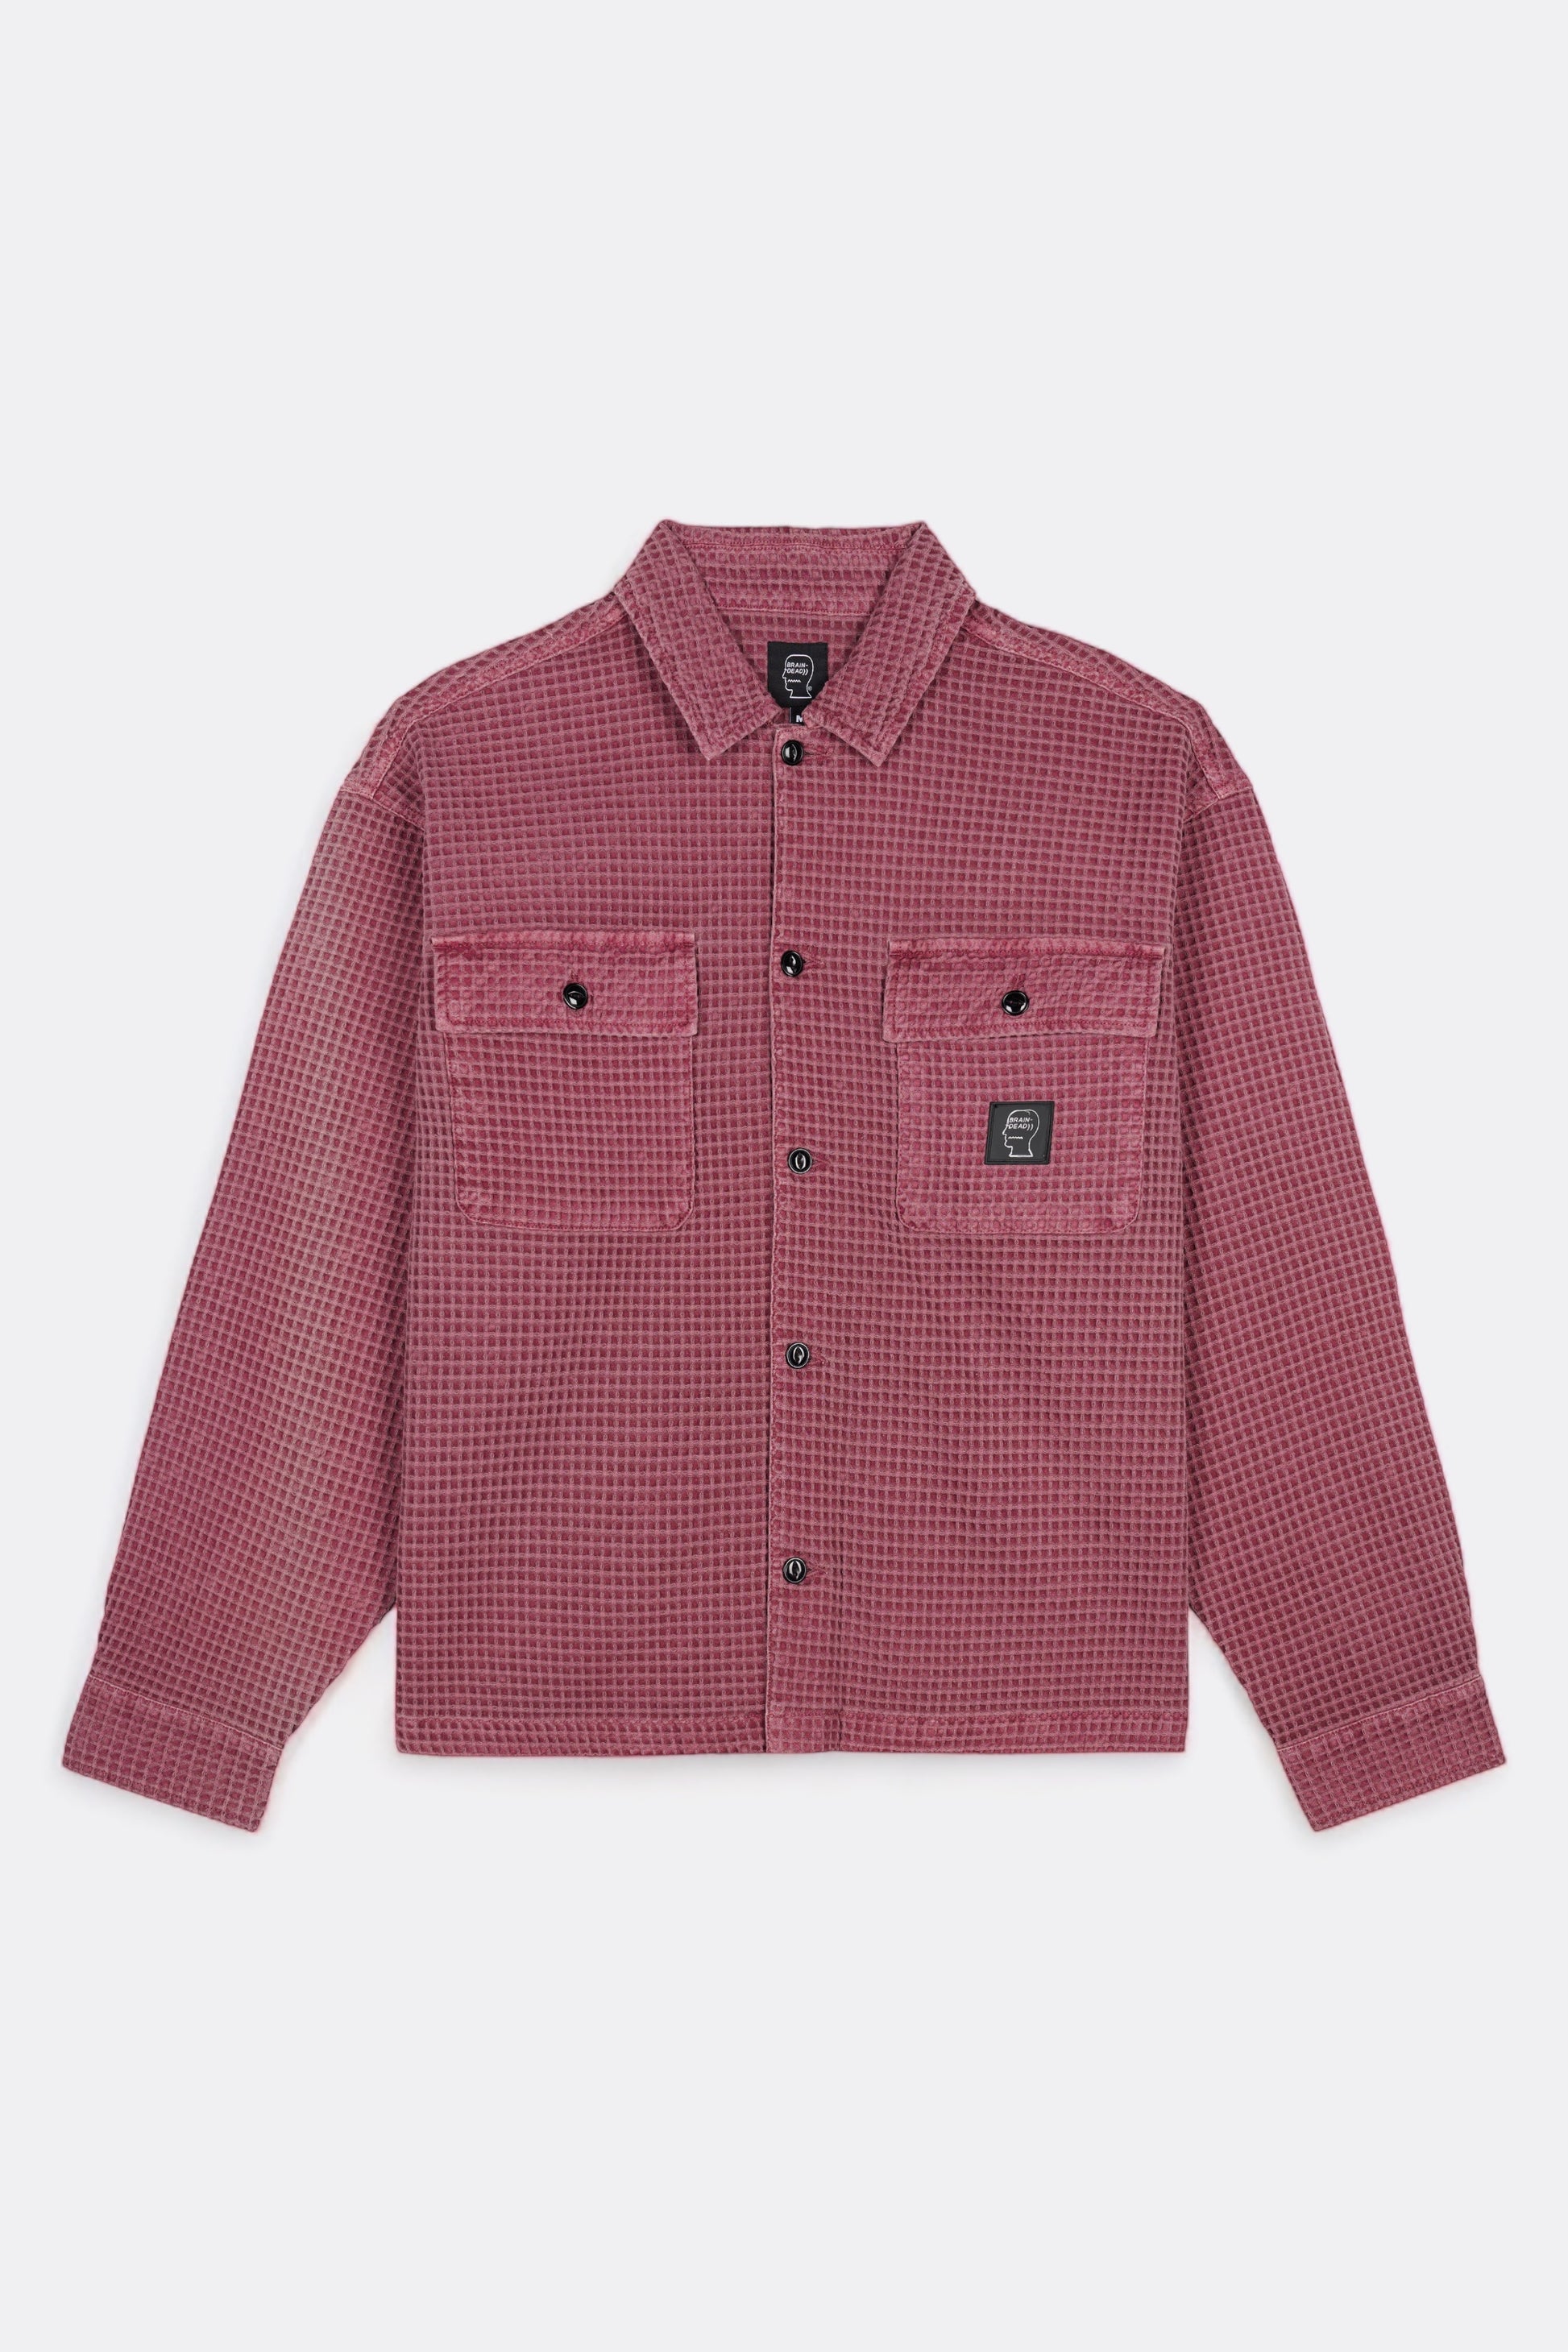 Brain Dead - Waffle Button Front Shirt (Raspberry)